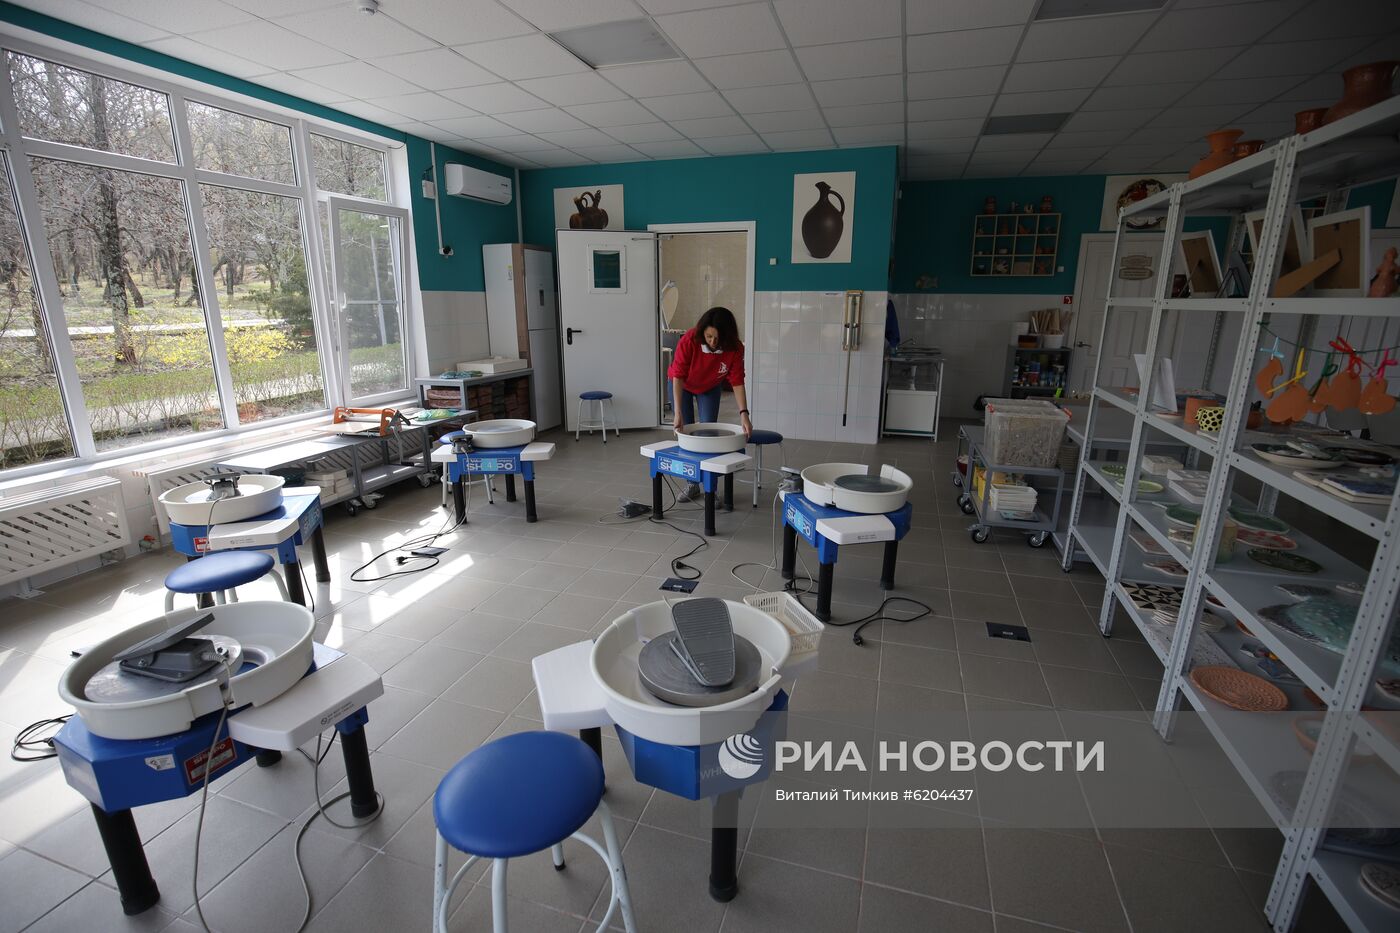 Всероссийский детский центр "Орленок" впервые отменил смену из-за коронавируса